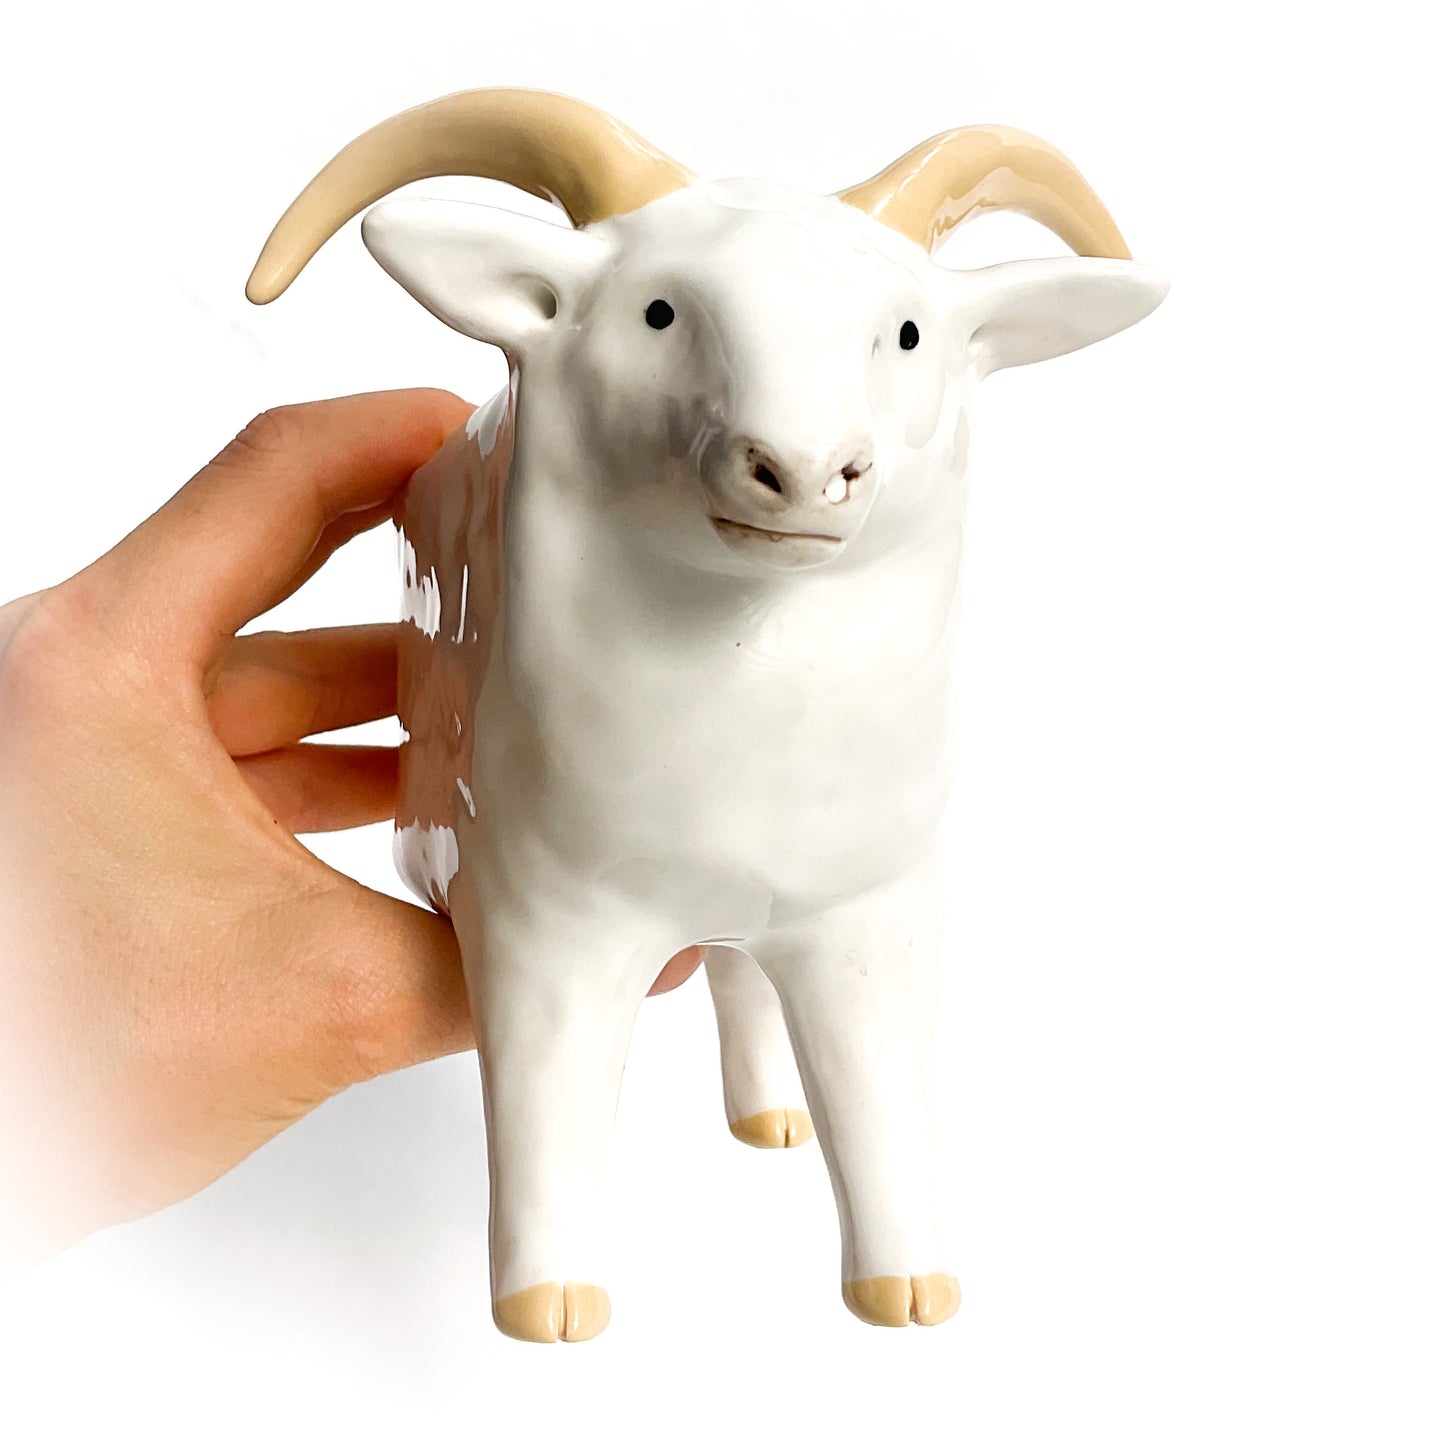 White Icelandic Sheep Pot - Ceramic Sheep Planter